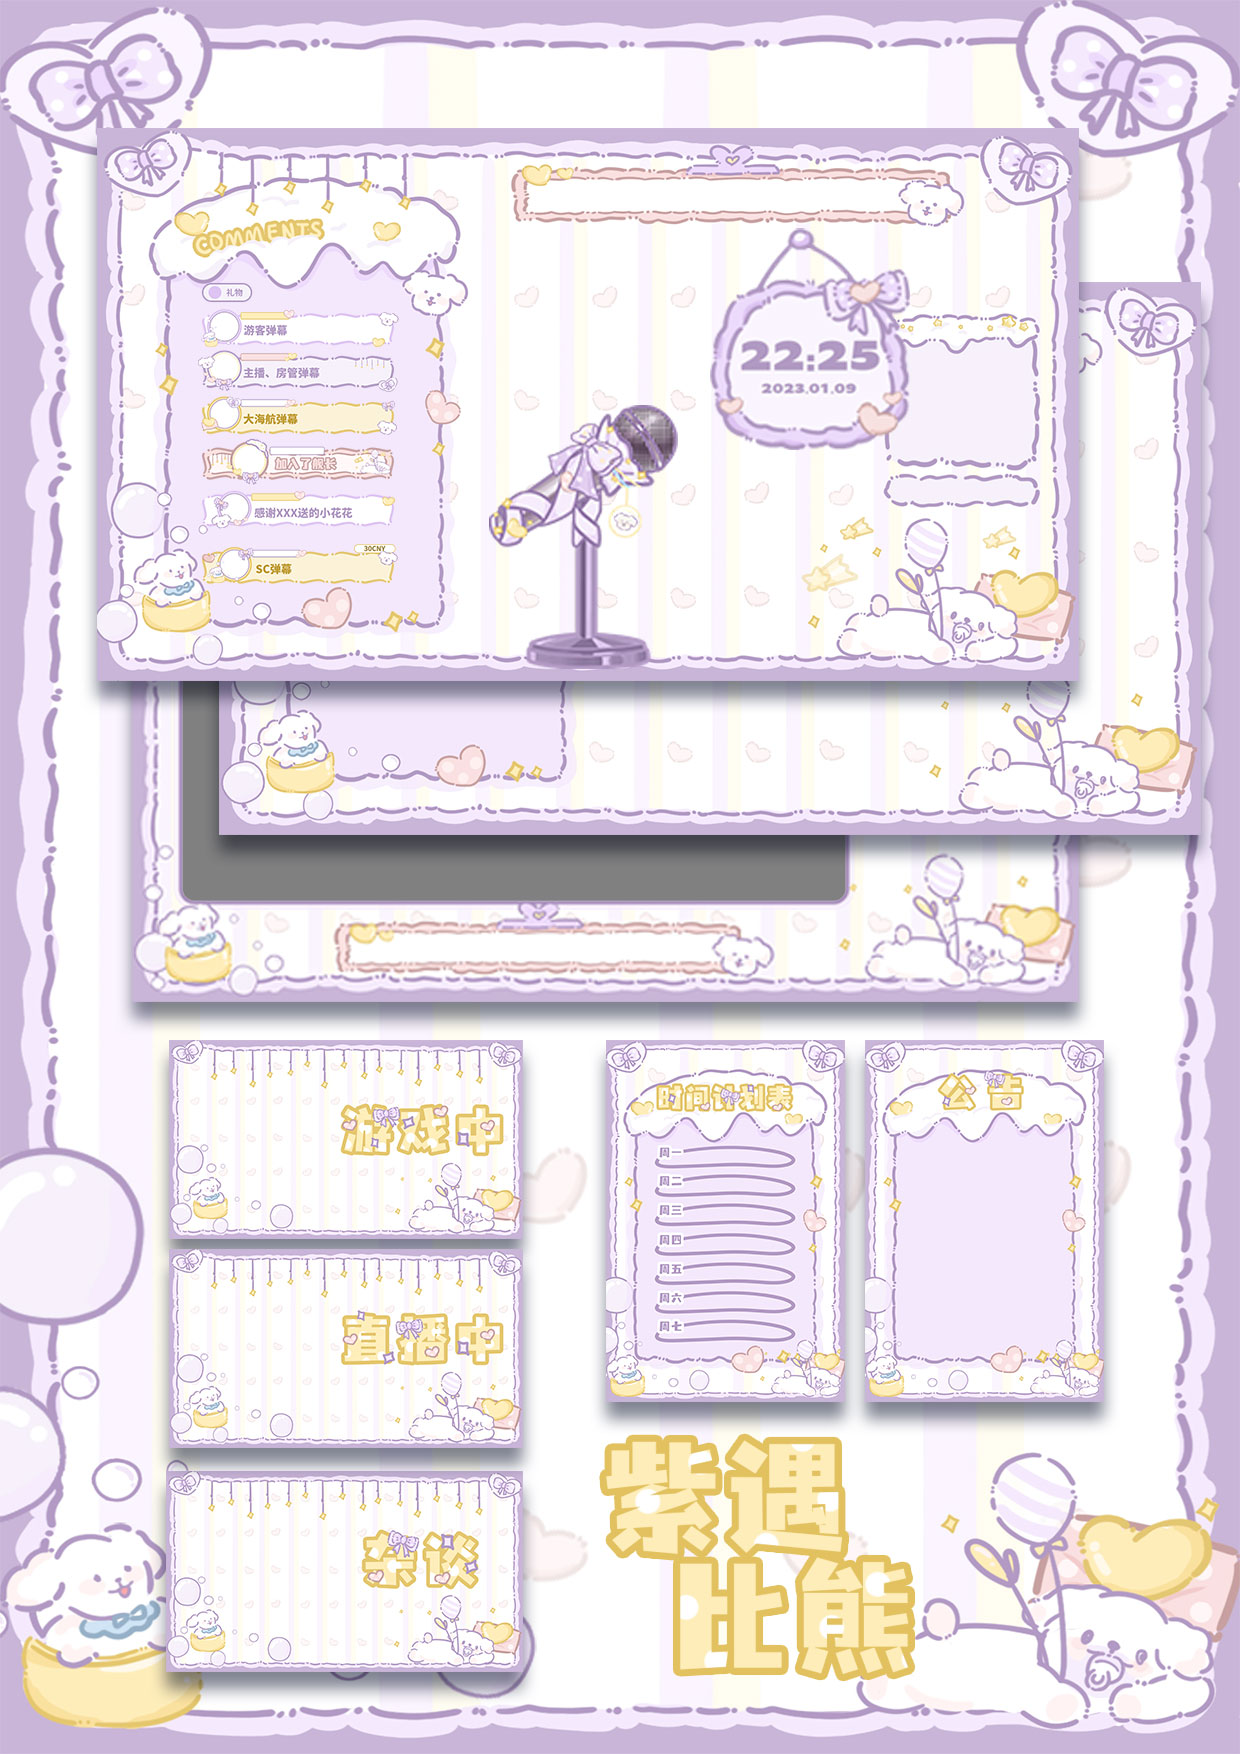 【虚物集】T001紫遇比熊VUP虚拟主播房间背景图可爱UI